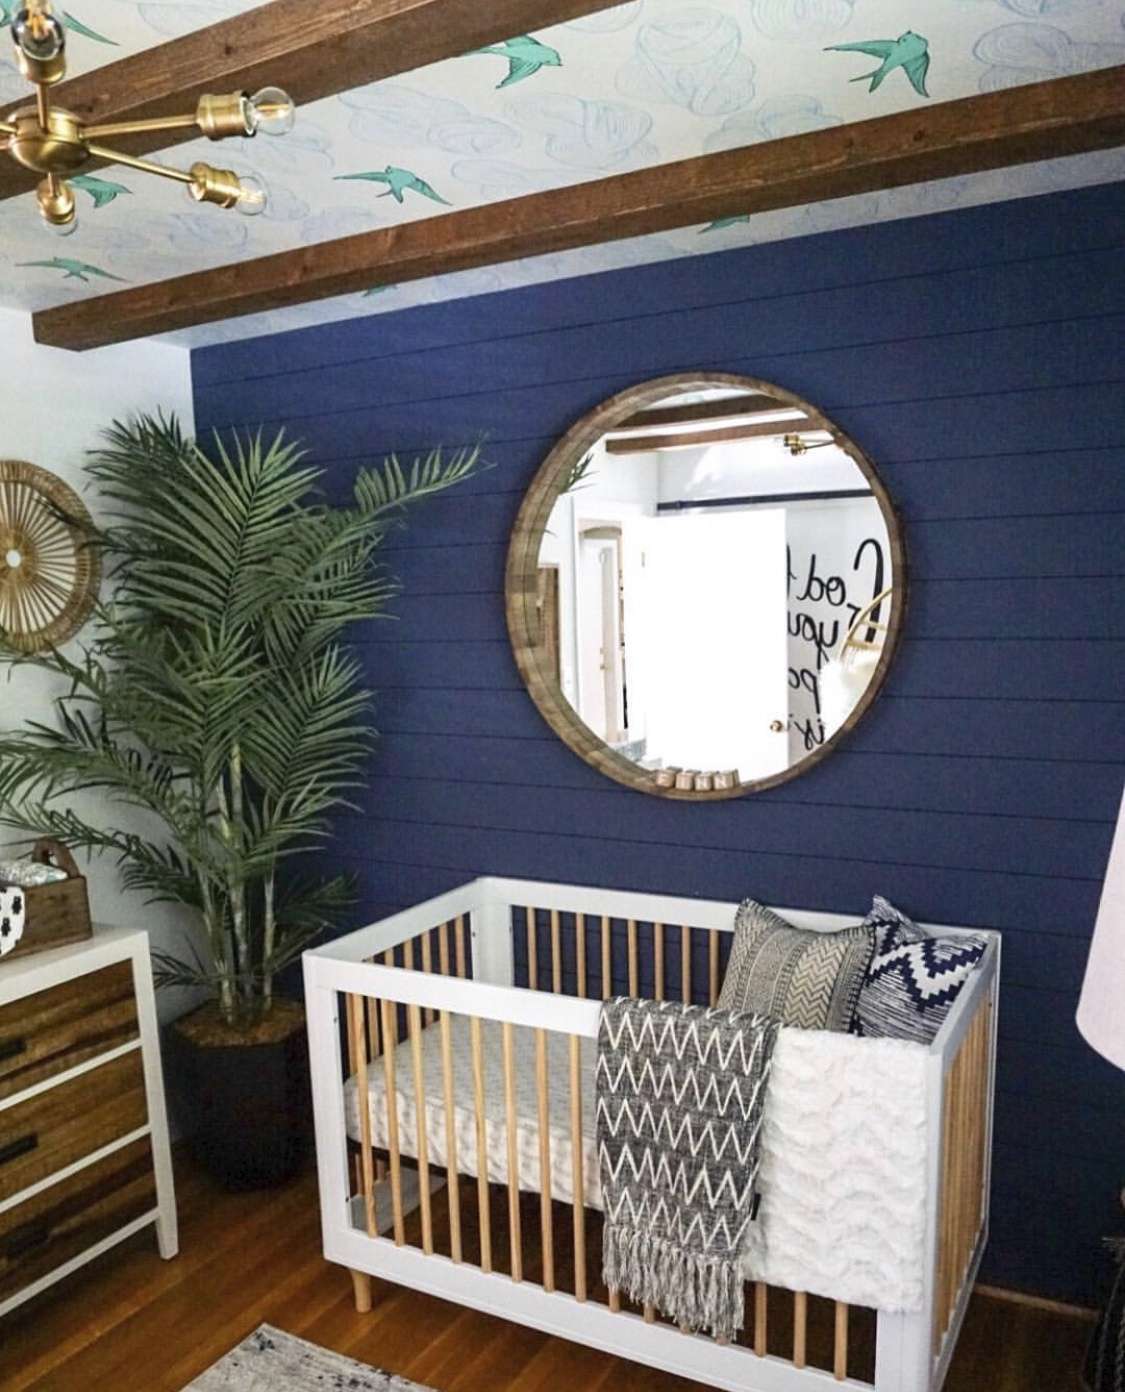 Wandtapete an der Decke eines Kinderzimmers, die auch bemalte Latten, Holzbalken und einen großen Spiegel aufweist